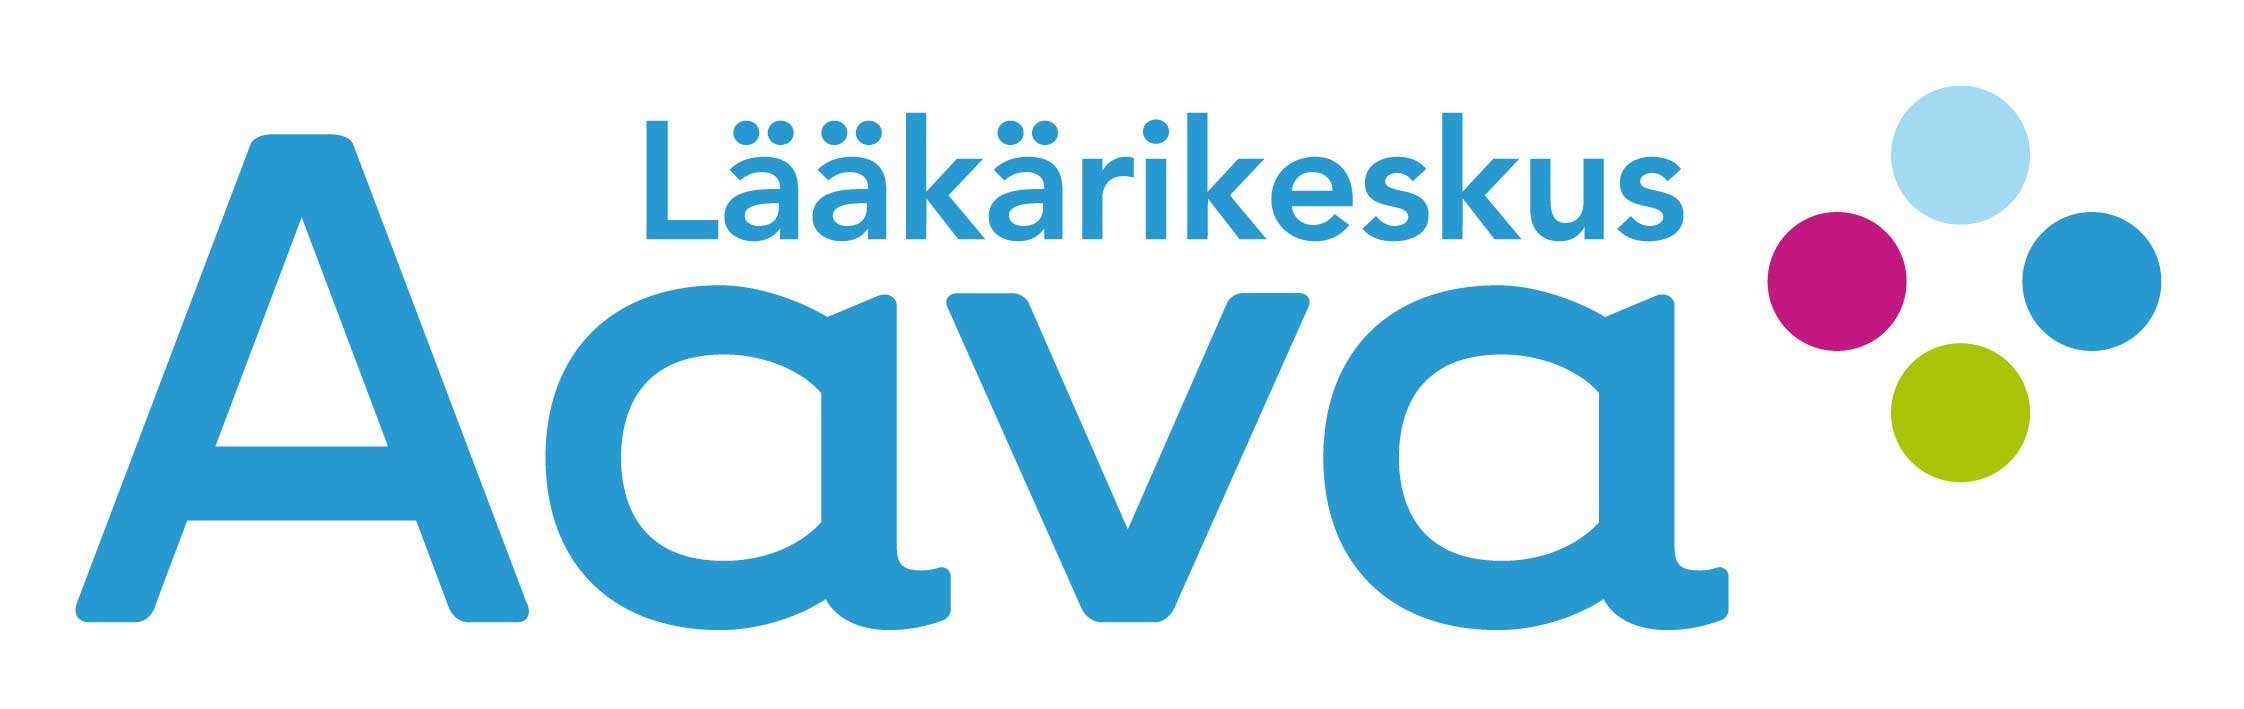 Aava_logo